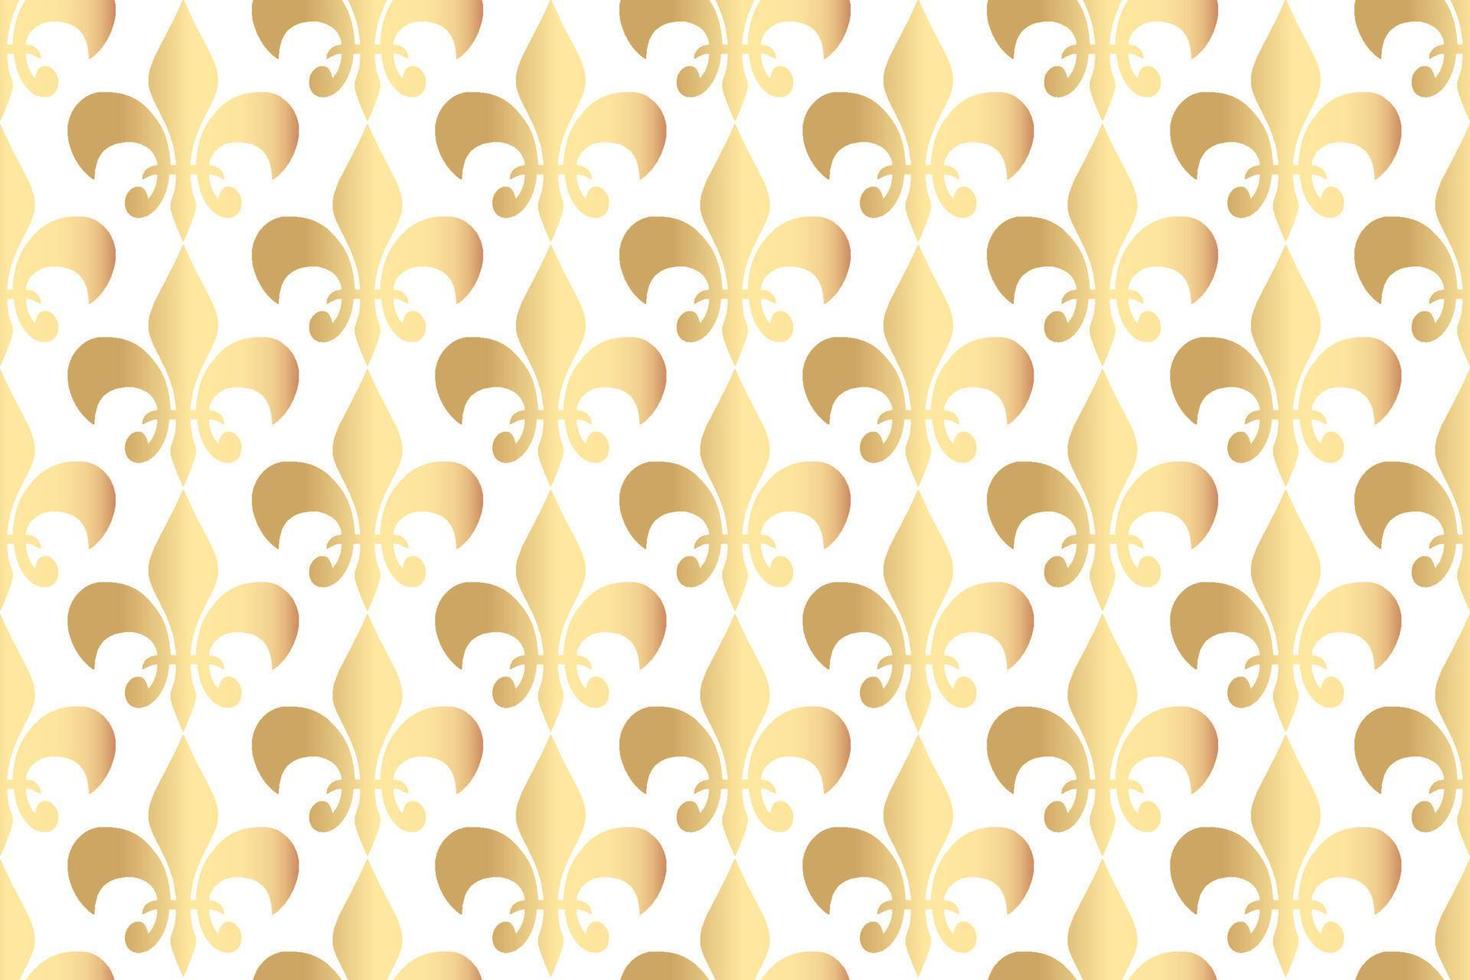 koninklijke heraldische lelies naadloos patroon vector